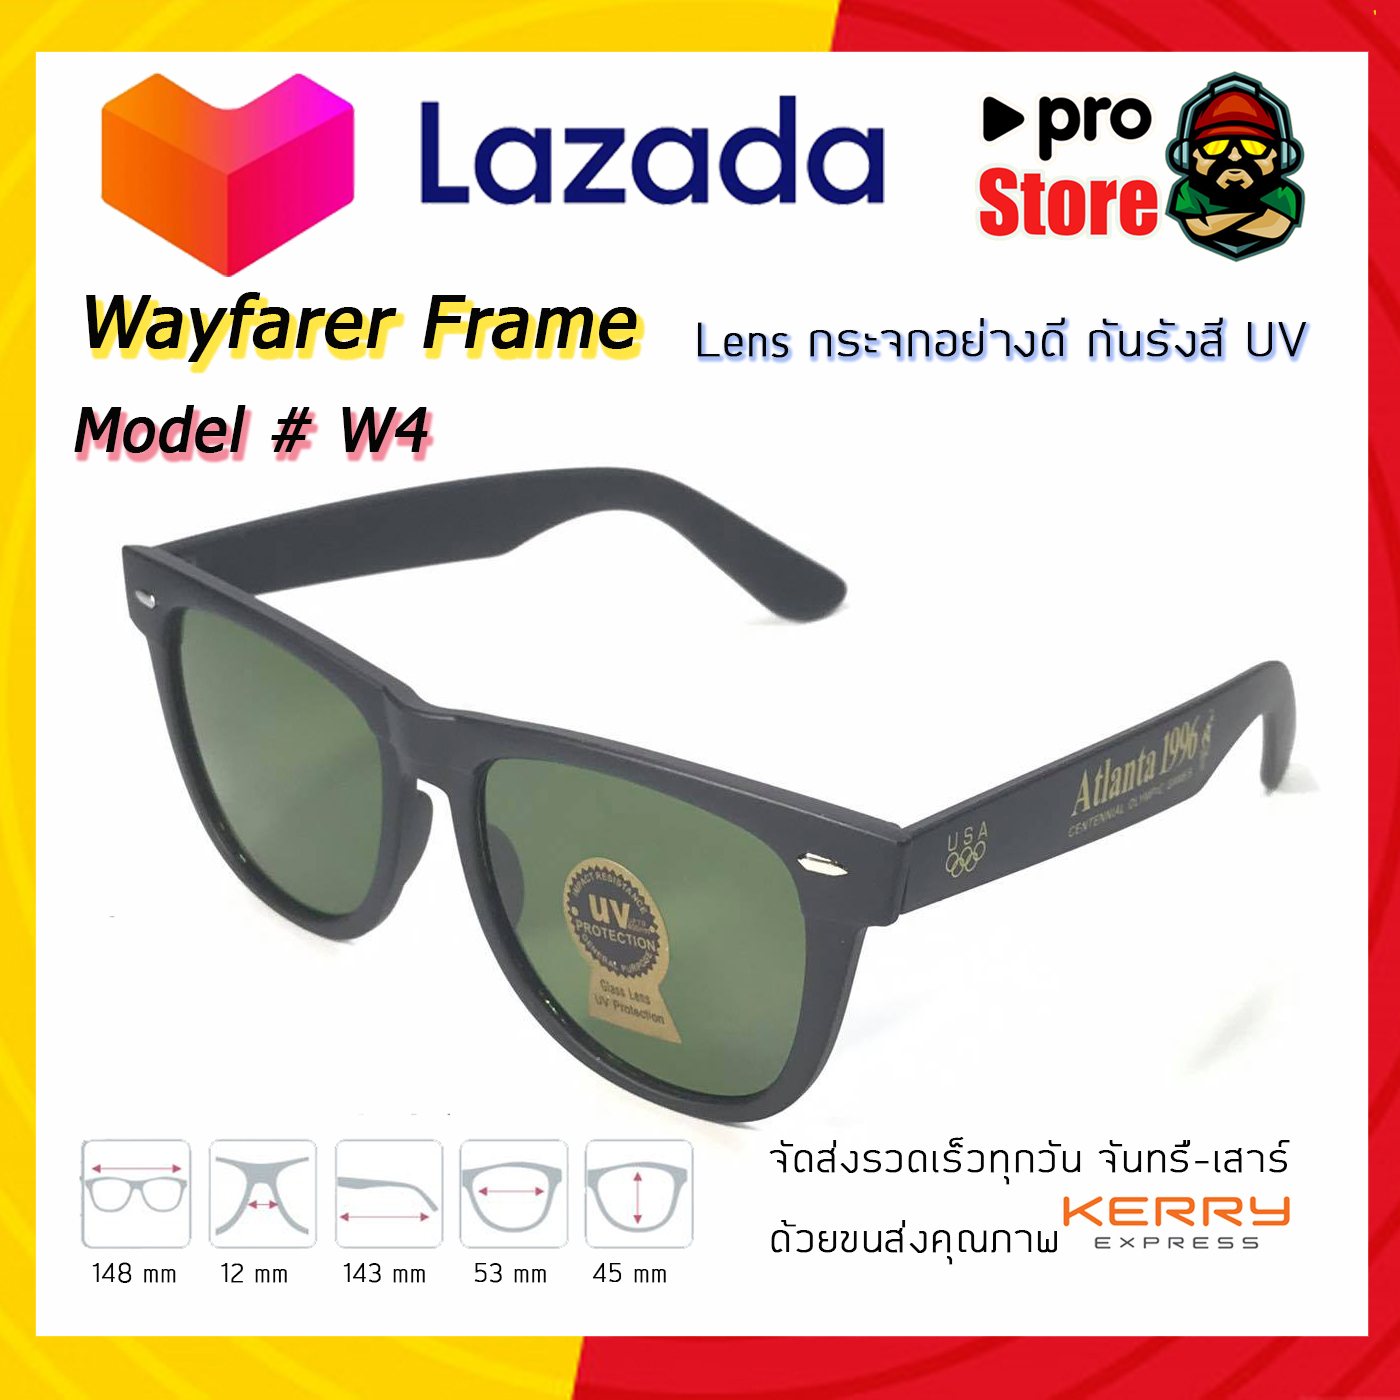 [จัดส่งฟรี]Wayfarer Frame Model # W-4 แว่นตากันแดด แว่นตาแฟชั่น แว่นตา เลนส์กระจก กันแสงuv400 สำหรับกิจกรรมกลางแจ้ง